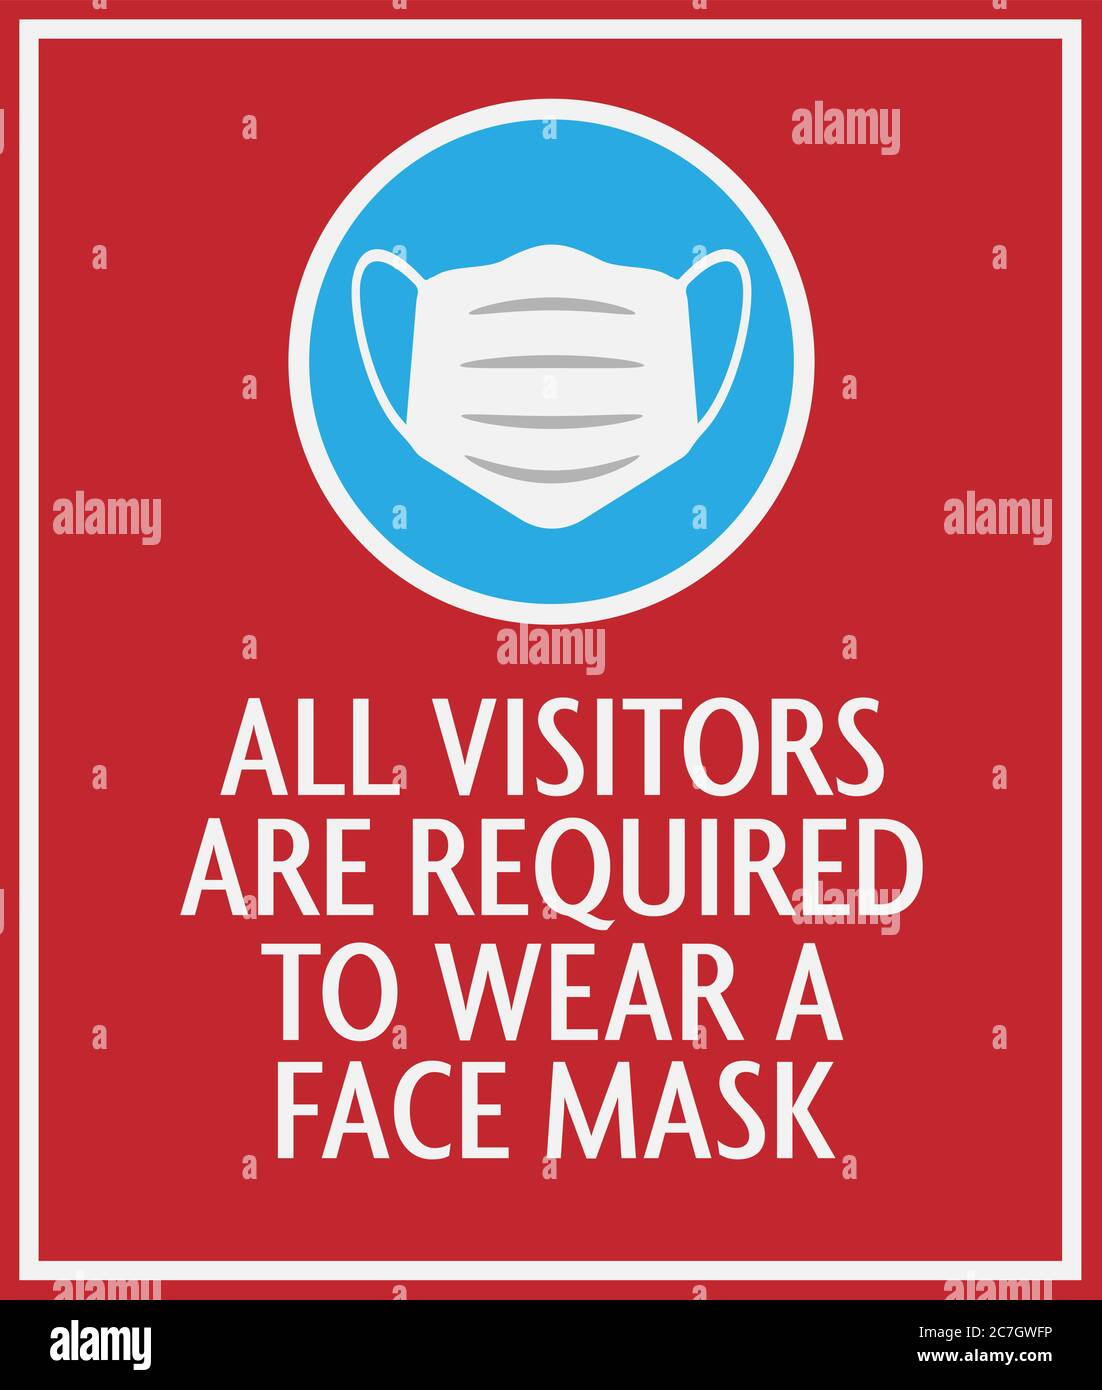 Rotes Gesichtsmaske erforderliches Schild mit Schutzmaske Symbol Vektor-Illustration Stock Vektor